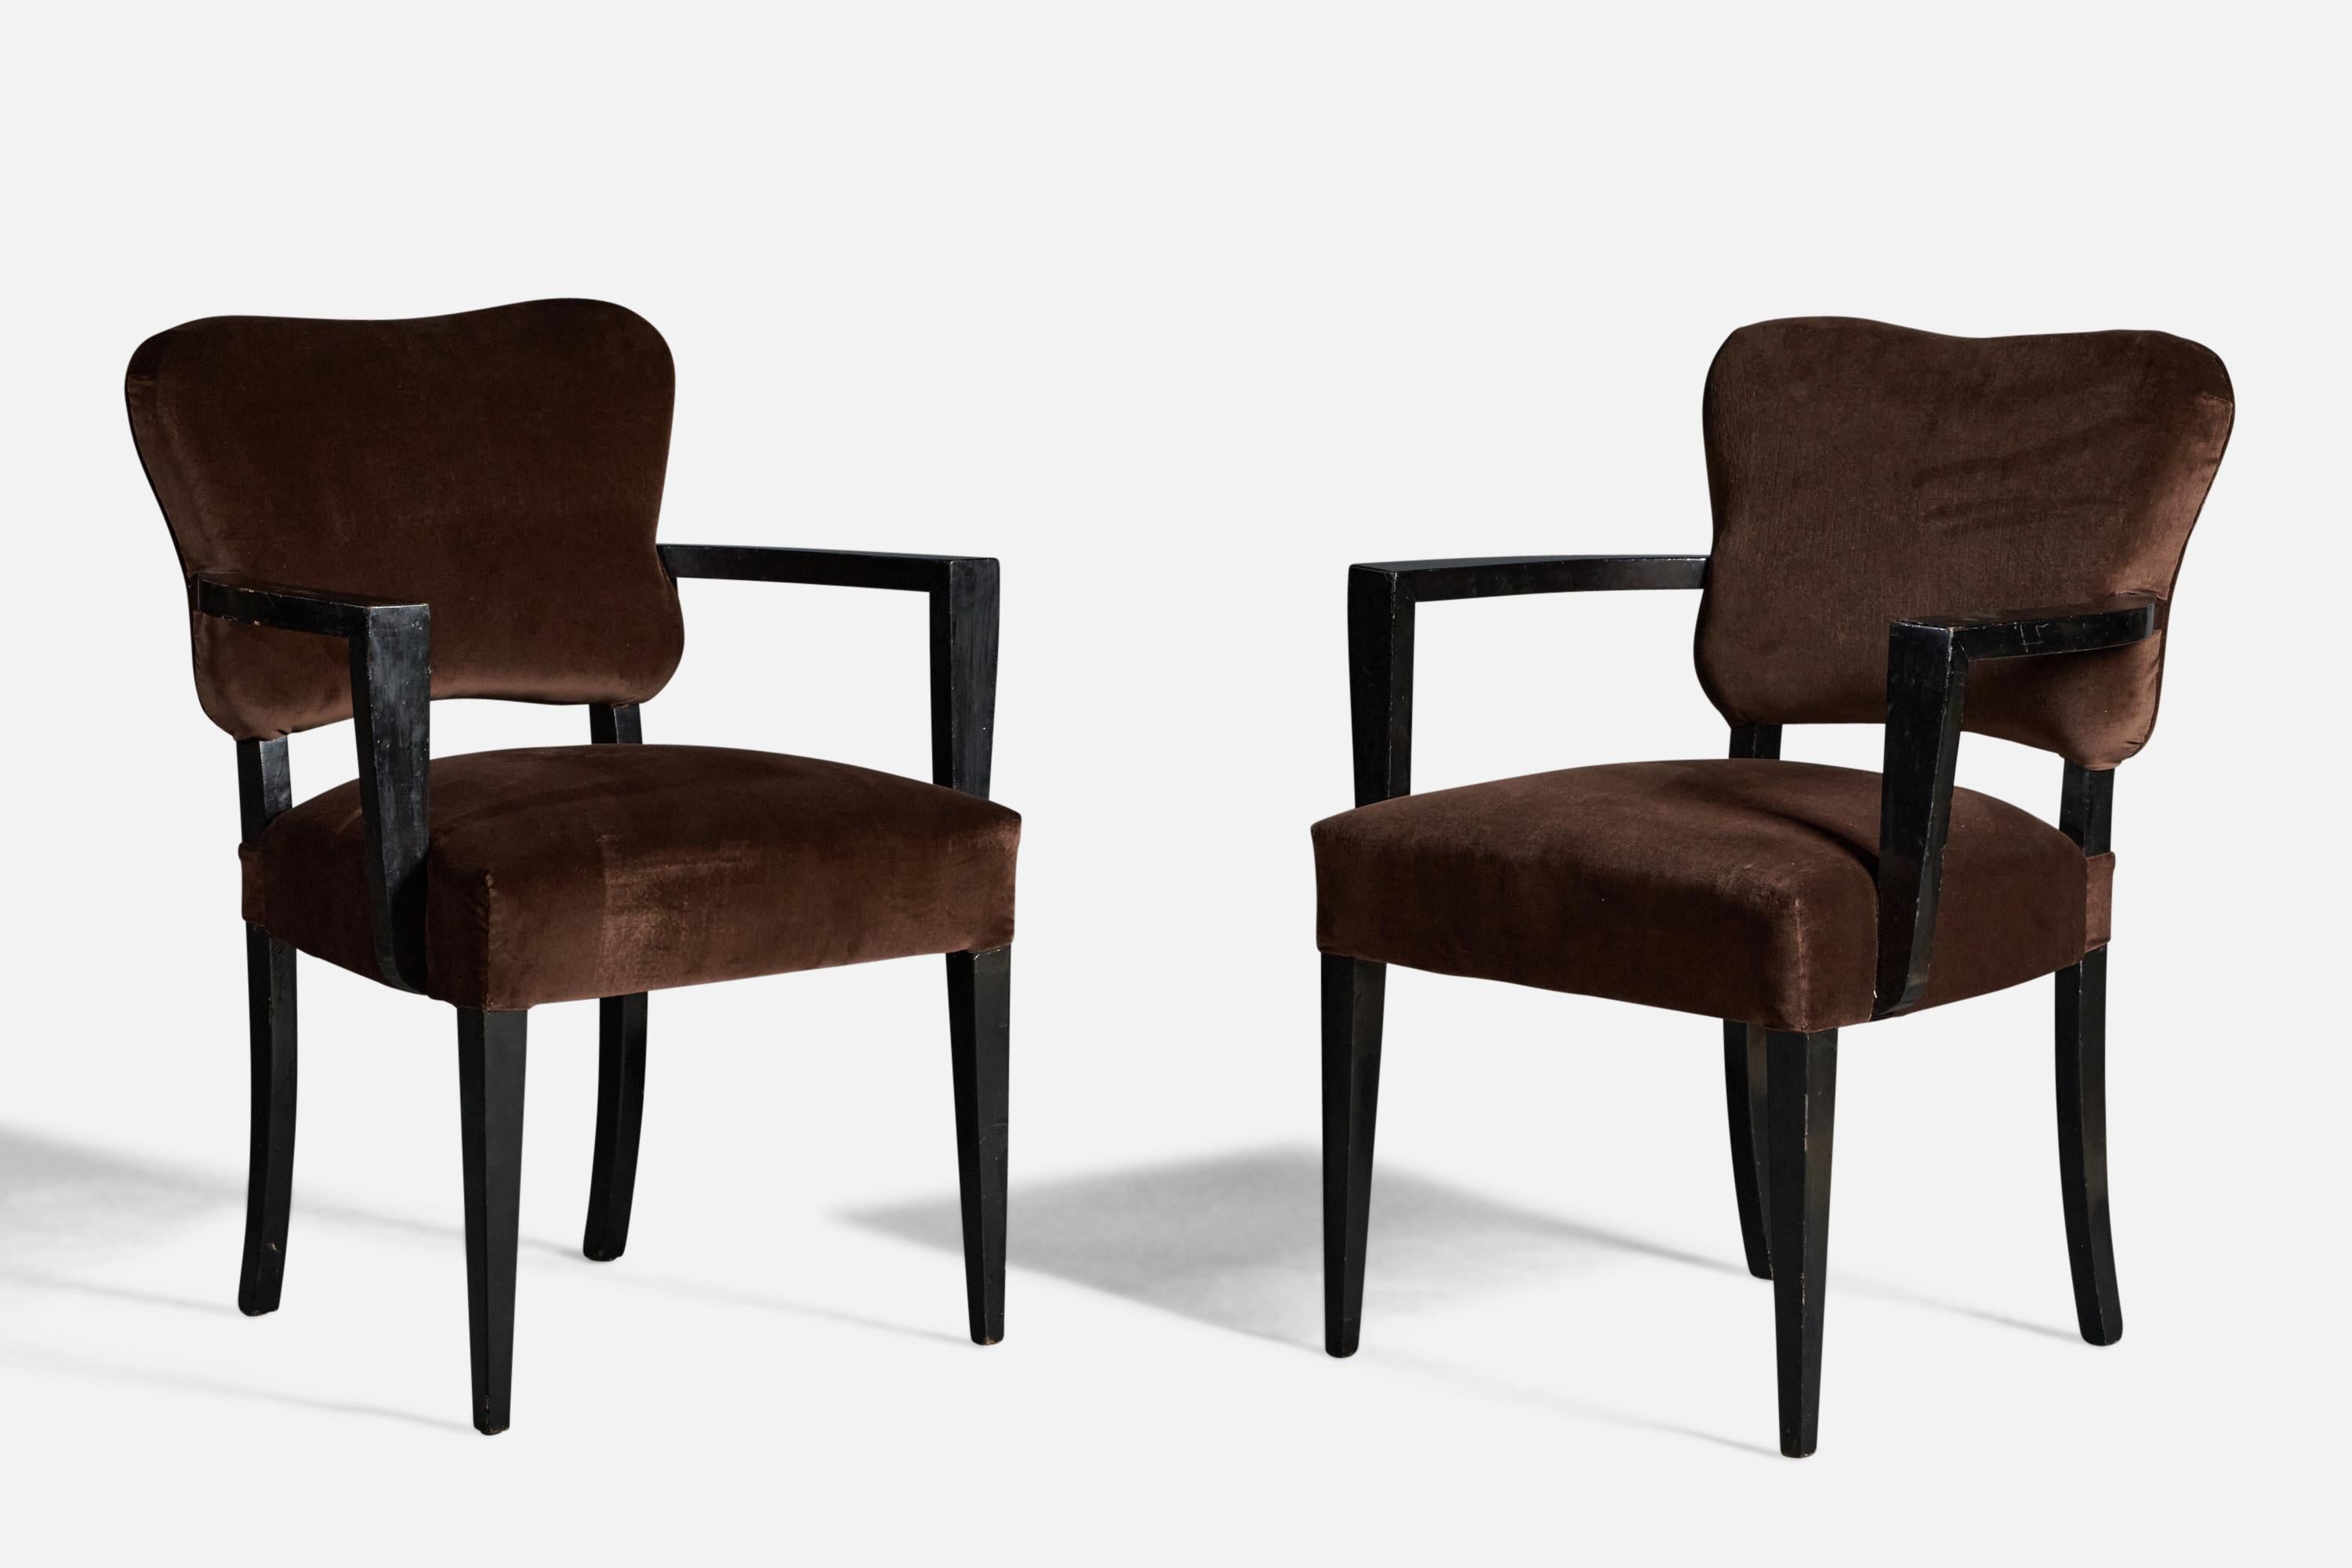 Paire de fauteuils en bois laqué noir et en velours brun, conçus et produits par James Mont, A.I.C., vers les années 1940.
